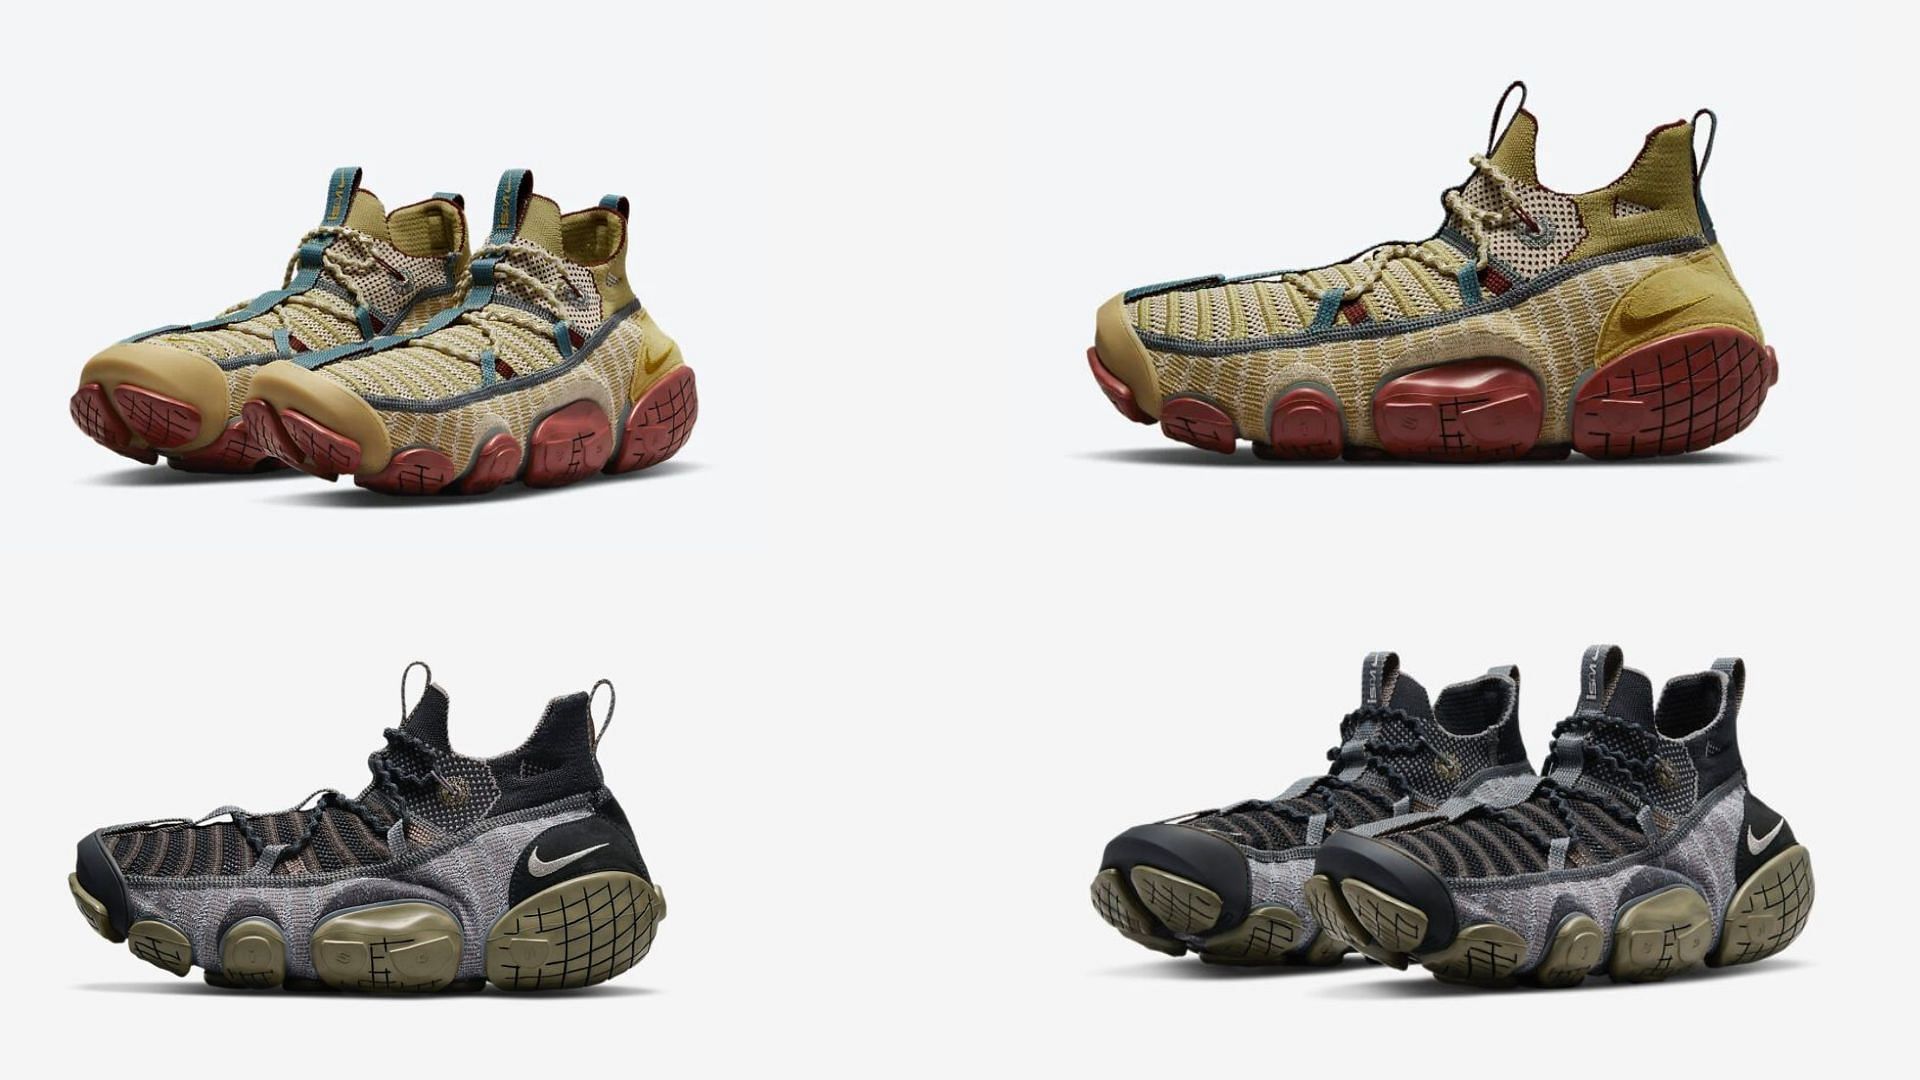 Nike ISPA Link shoes in Medium Olive and Barley colorways (Image via Sportskeeda)